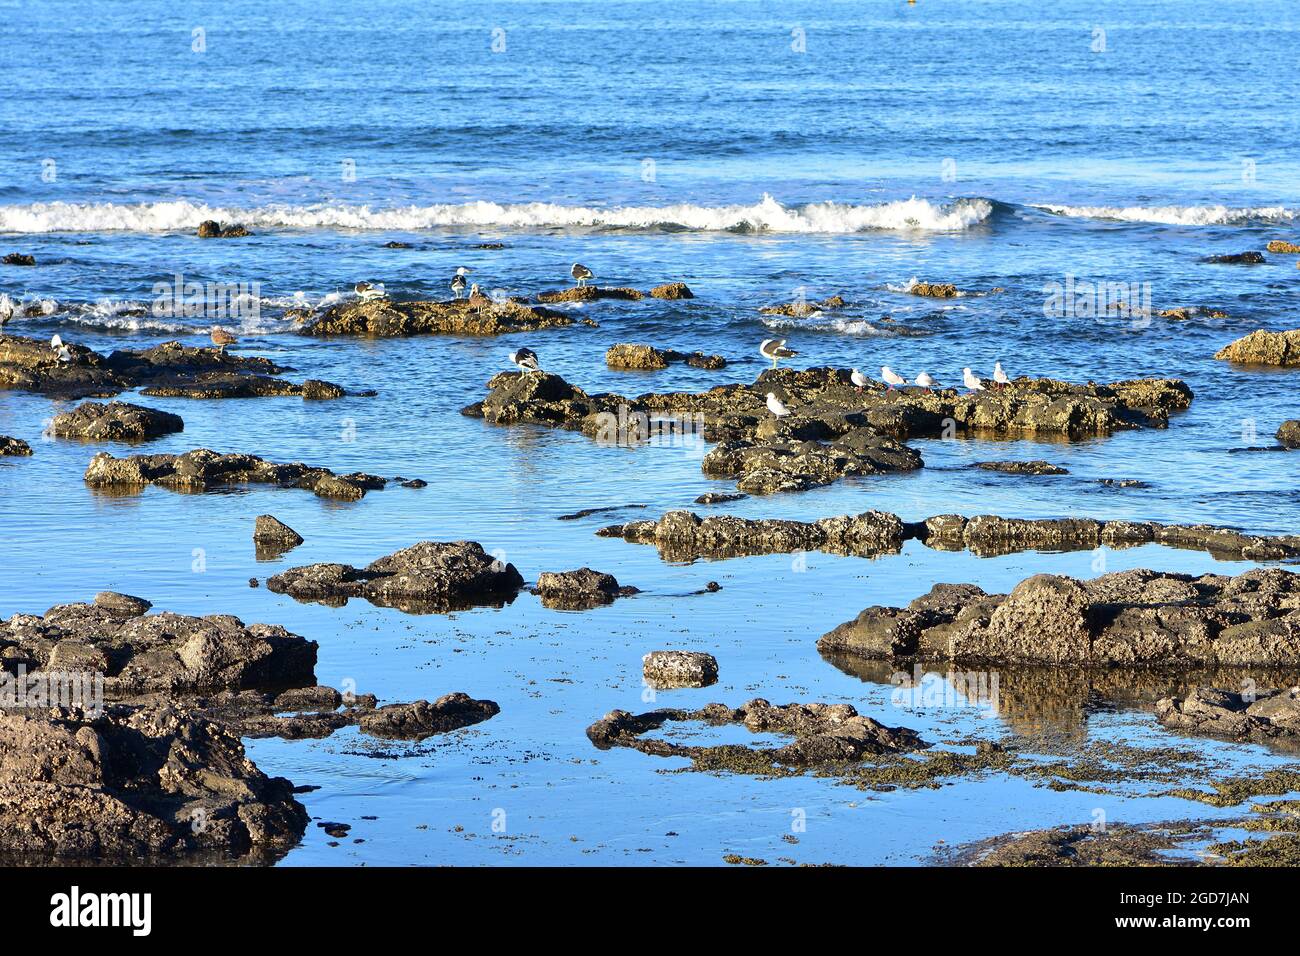 Rocas de arrecife costero cubierto de organismos oxidantes que sobresalen del agua durante el período de marea baja. Foto de stock